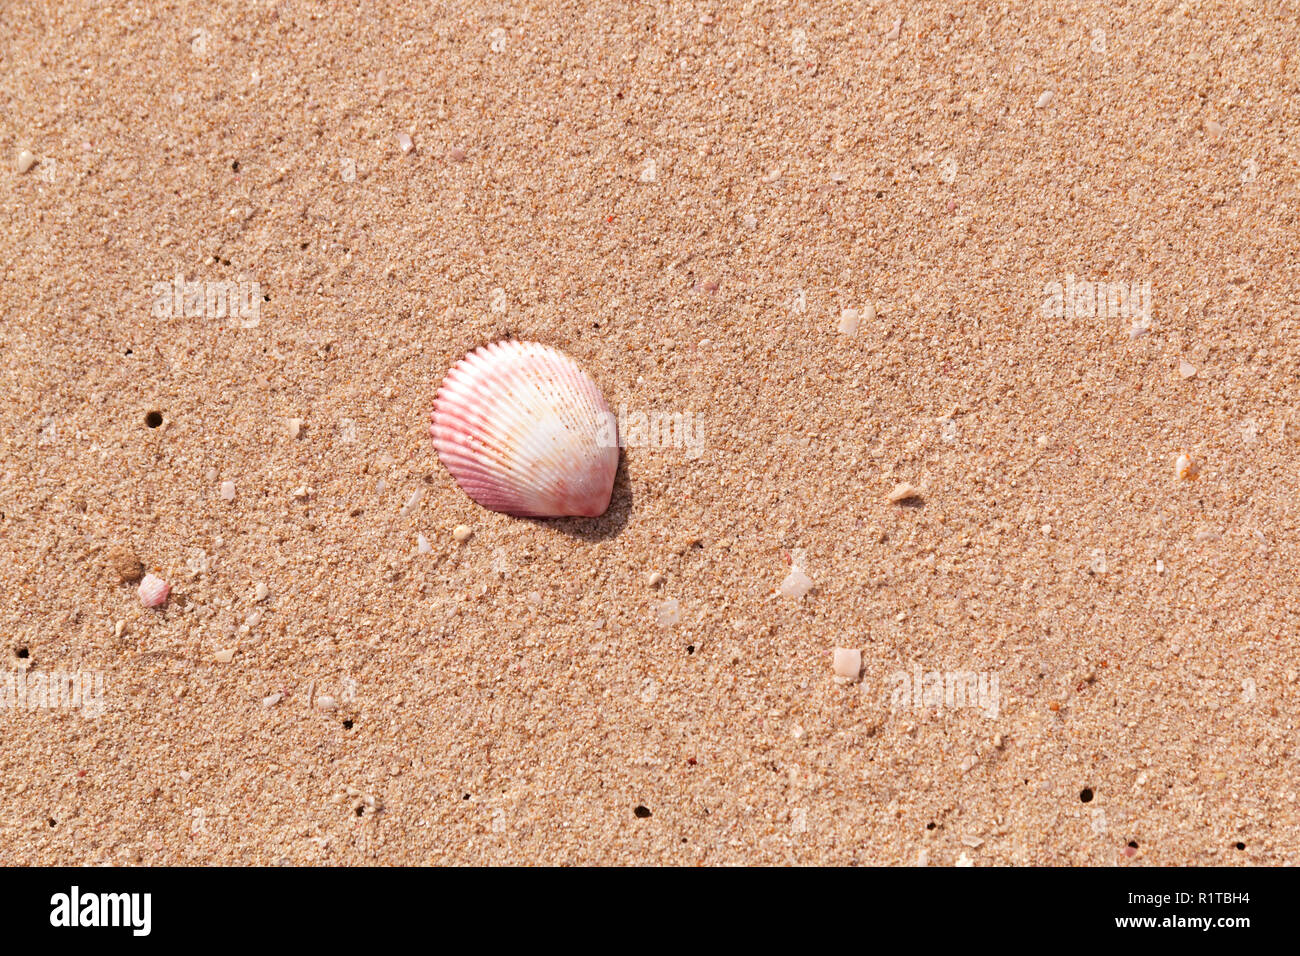 Fond de sable et de coquillages naturels. La coquille de la mer Noire sur la côte. Seul coquillage. Close up. Tonique Banque D'Images